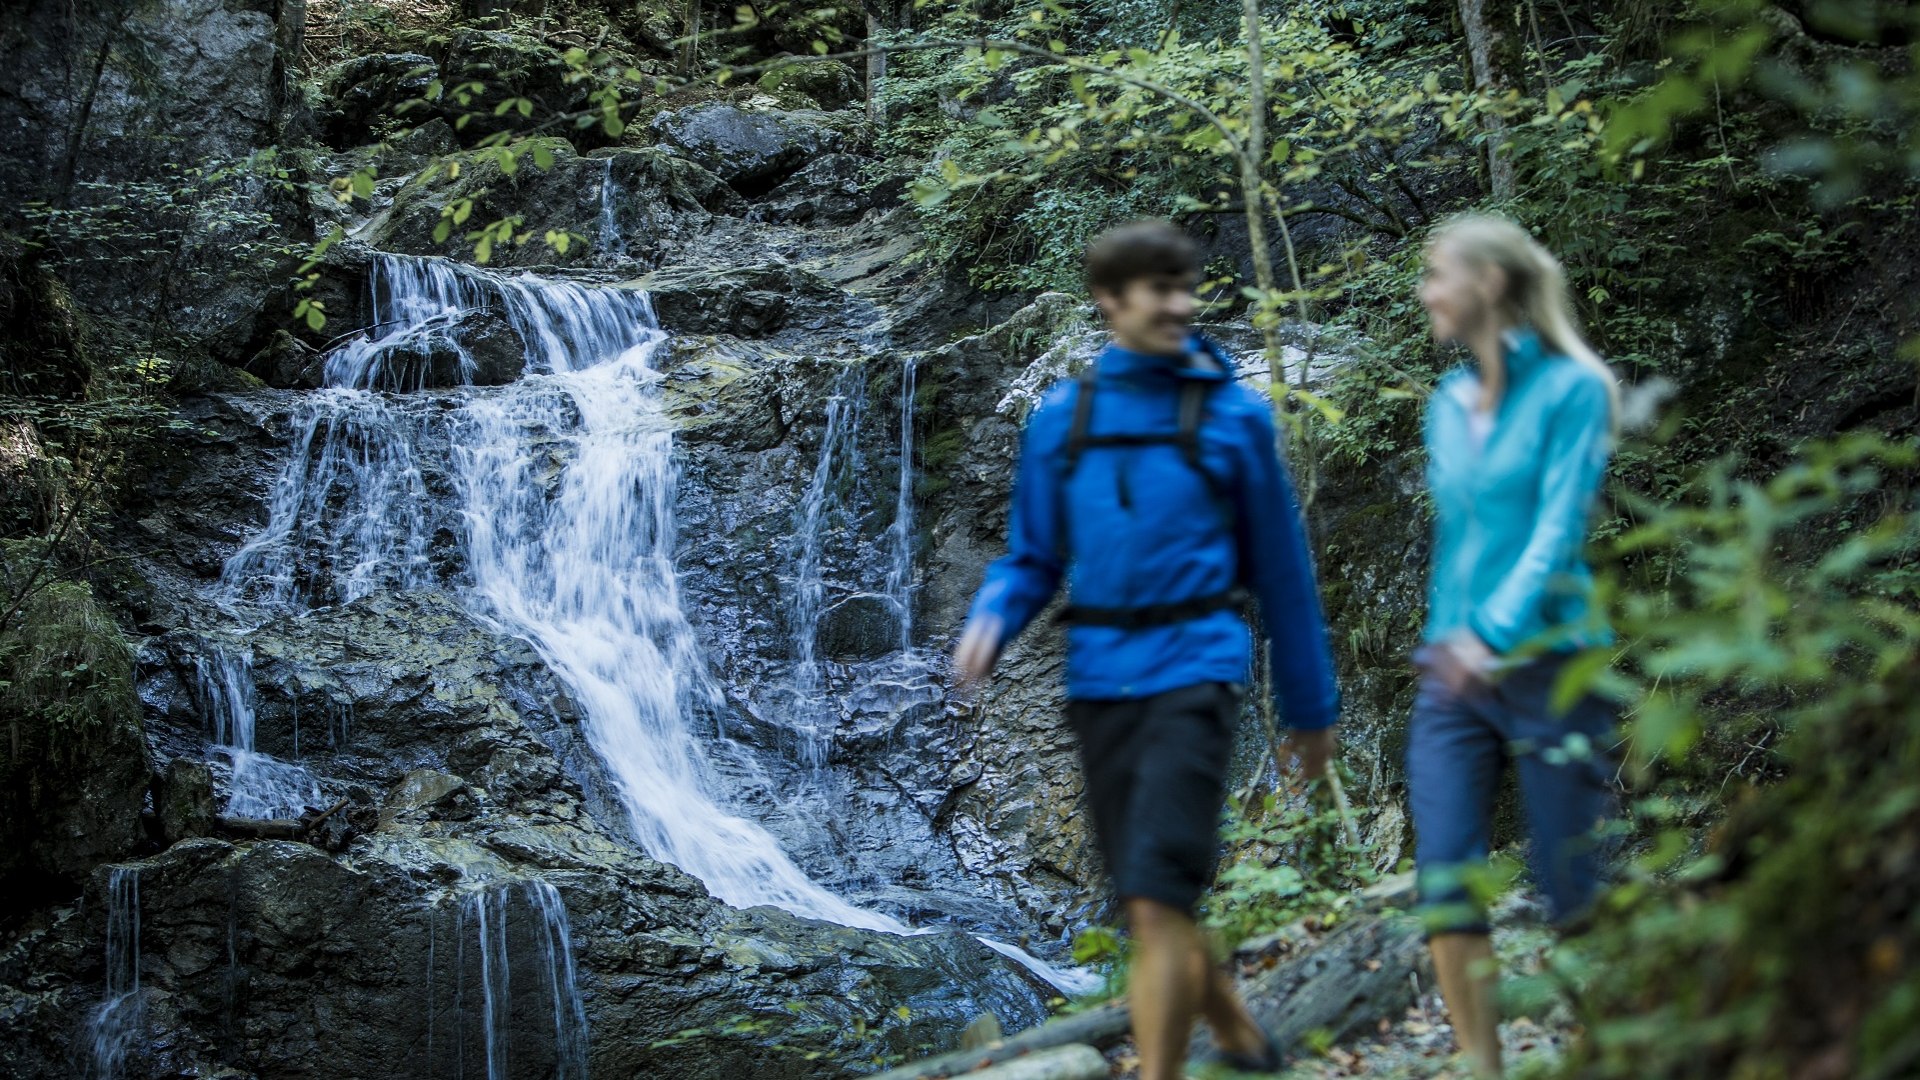 Erfahre mehr zur Entstehung der Landschaft und den Lebensräumen am Bergwald und dem Wasserfall bei Kochel a. See., © Tourist Information Bad Tölz|Hansi Heckmair